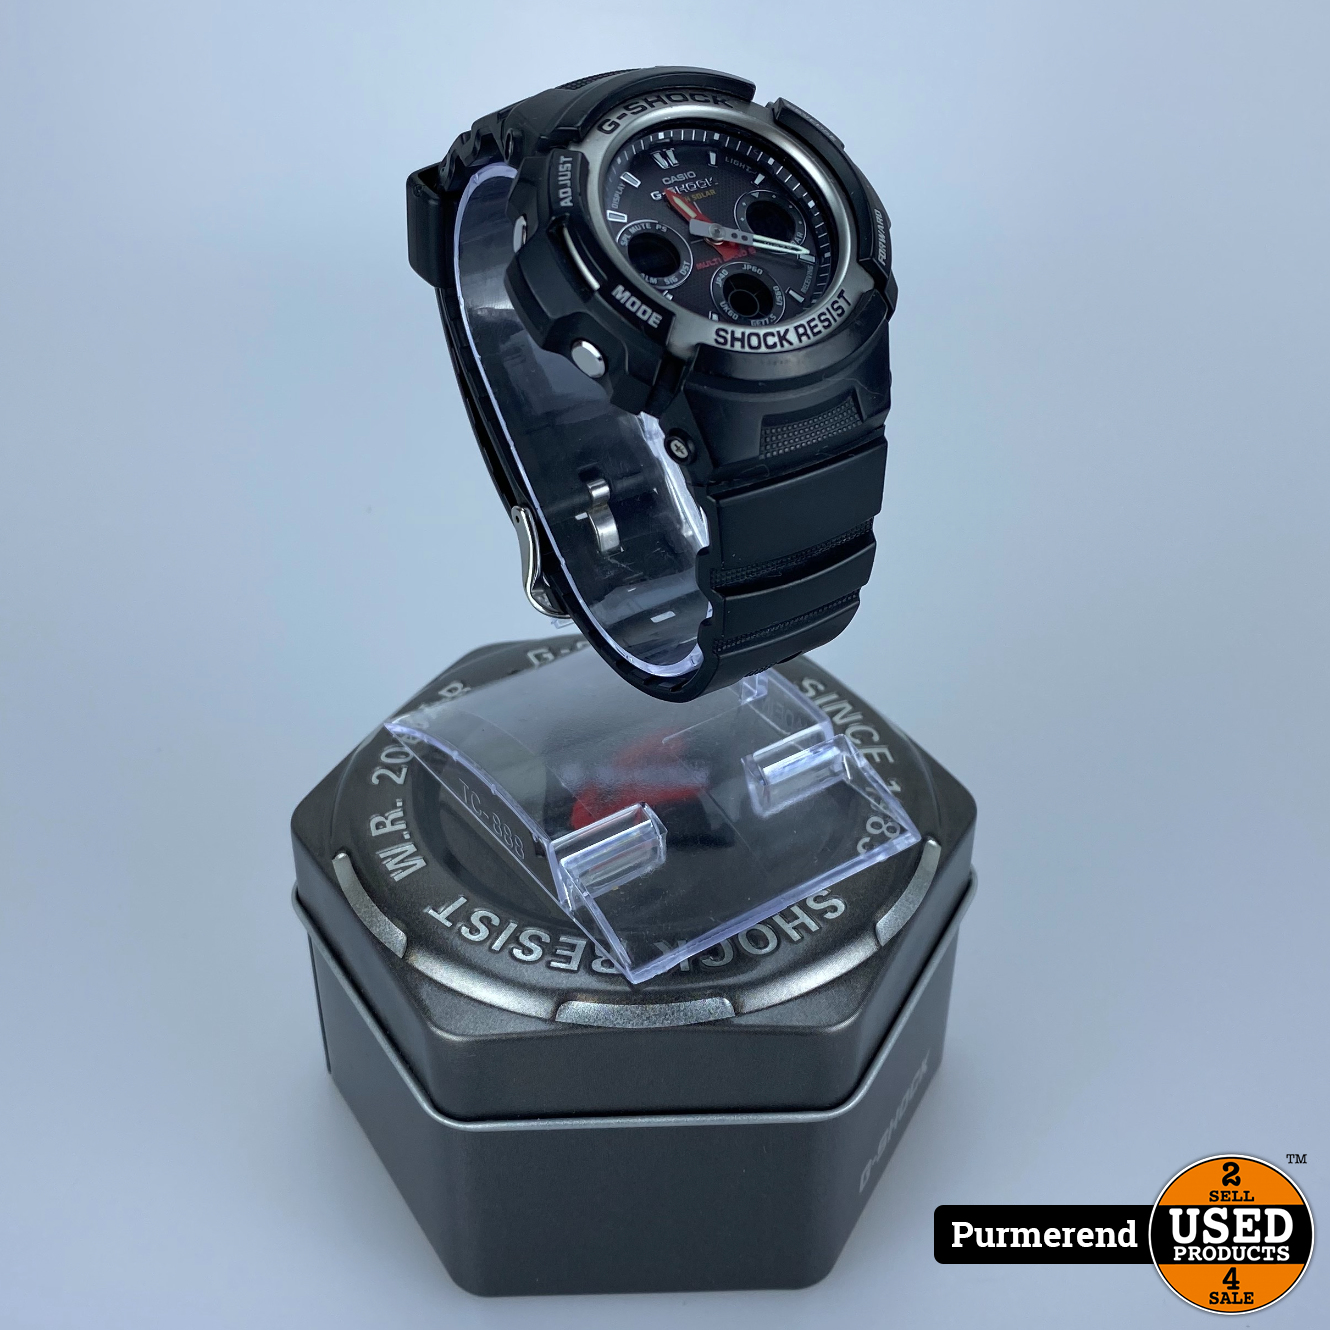 Bezienswaardigheden bekijken Isoleren Malawi G-Shock AWG-101 heren horloge - Used Products Purmerend